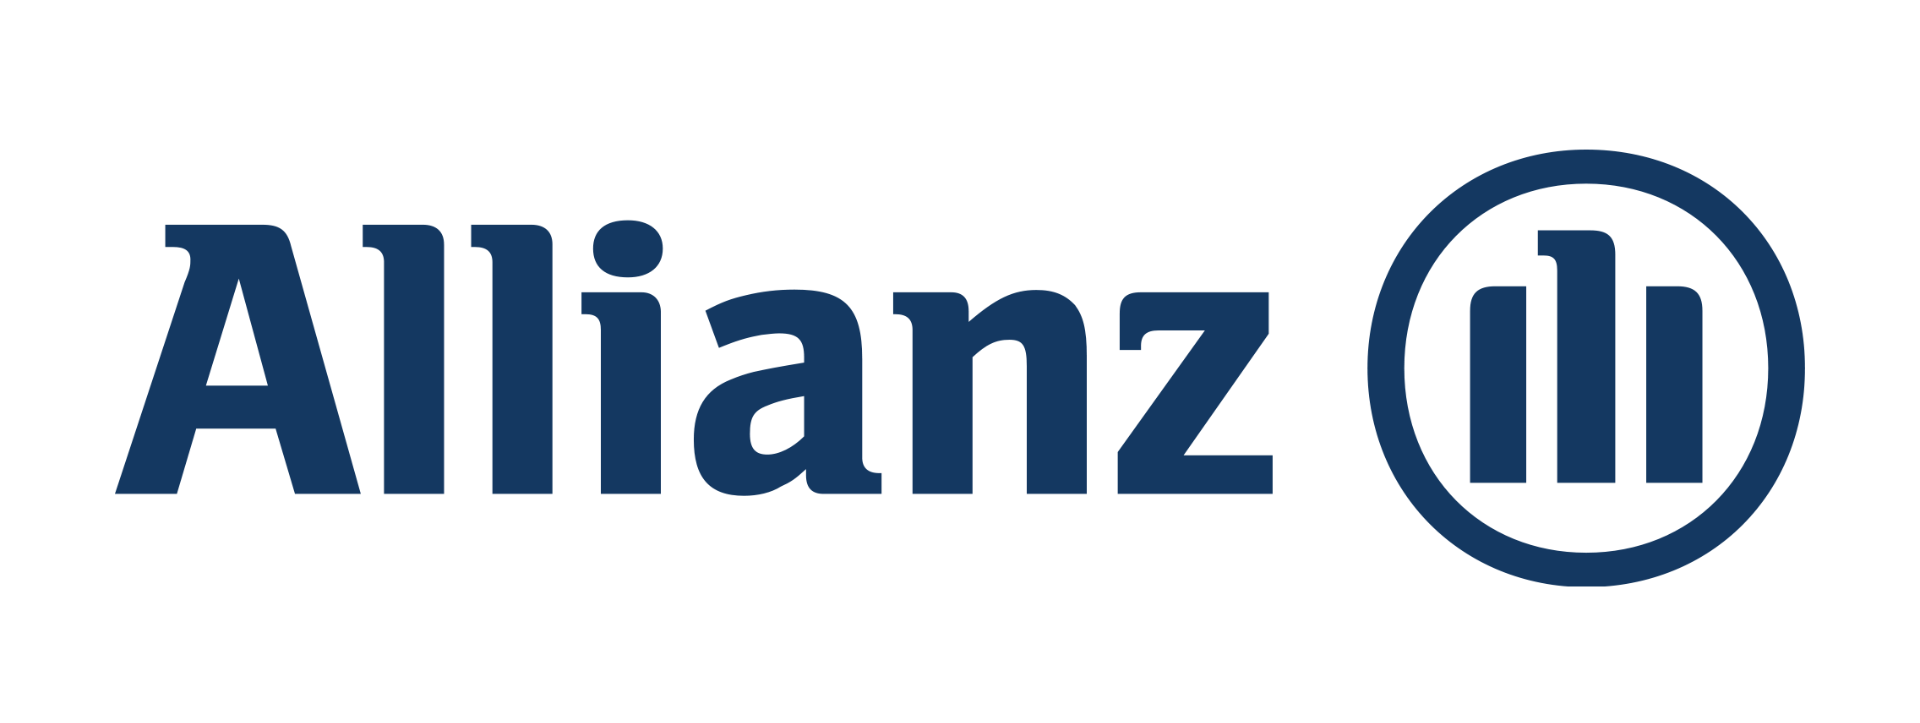 allianz_logo.png